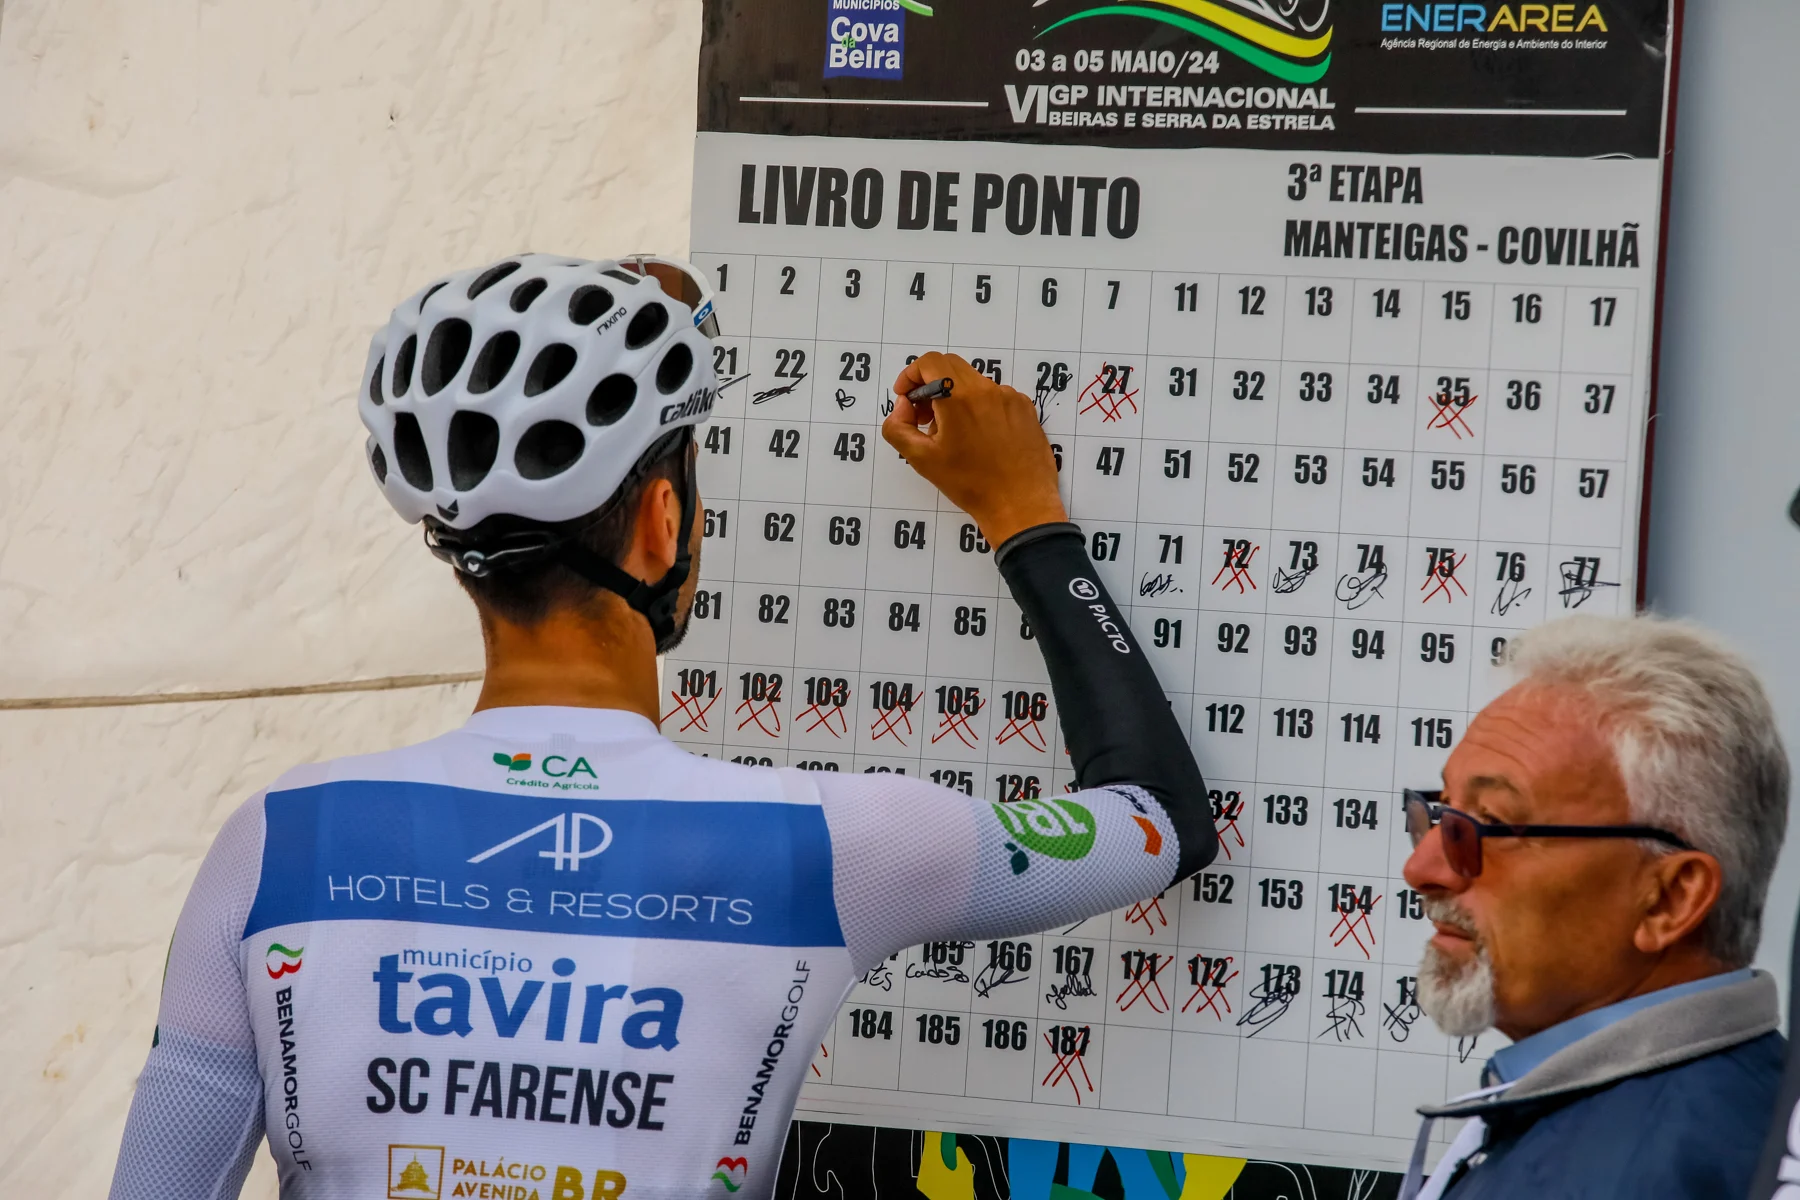 Clube Ciclismo de Tavira - 6.º Grande Prémio Internacional das Beiras e Serra da Estrela8